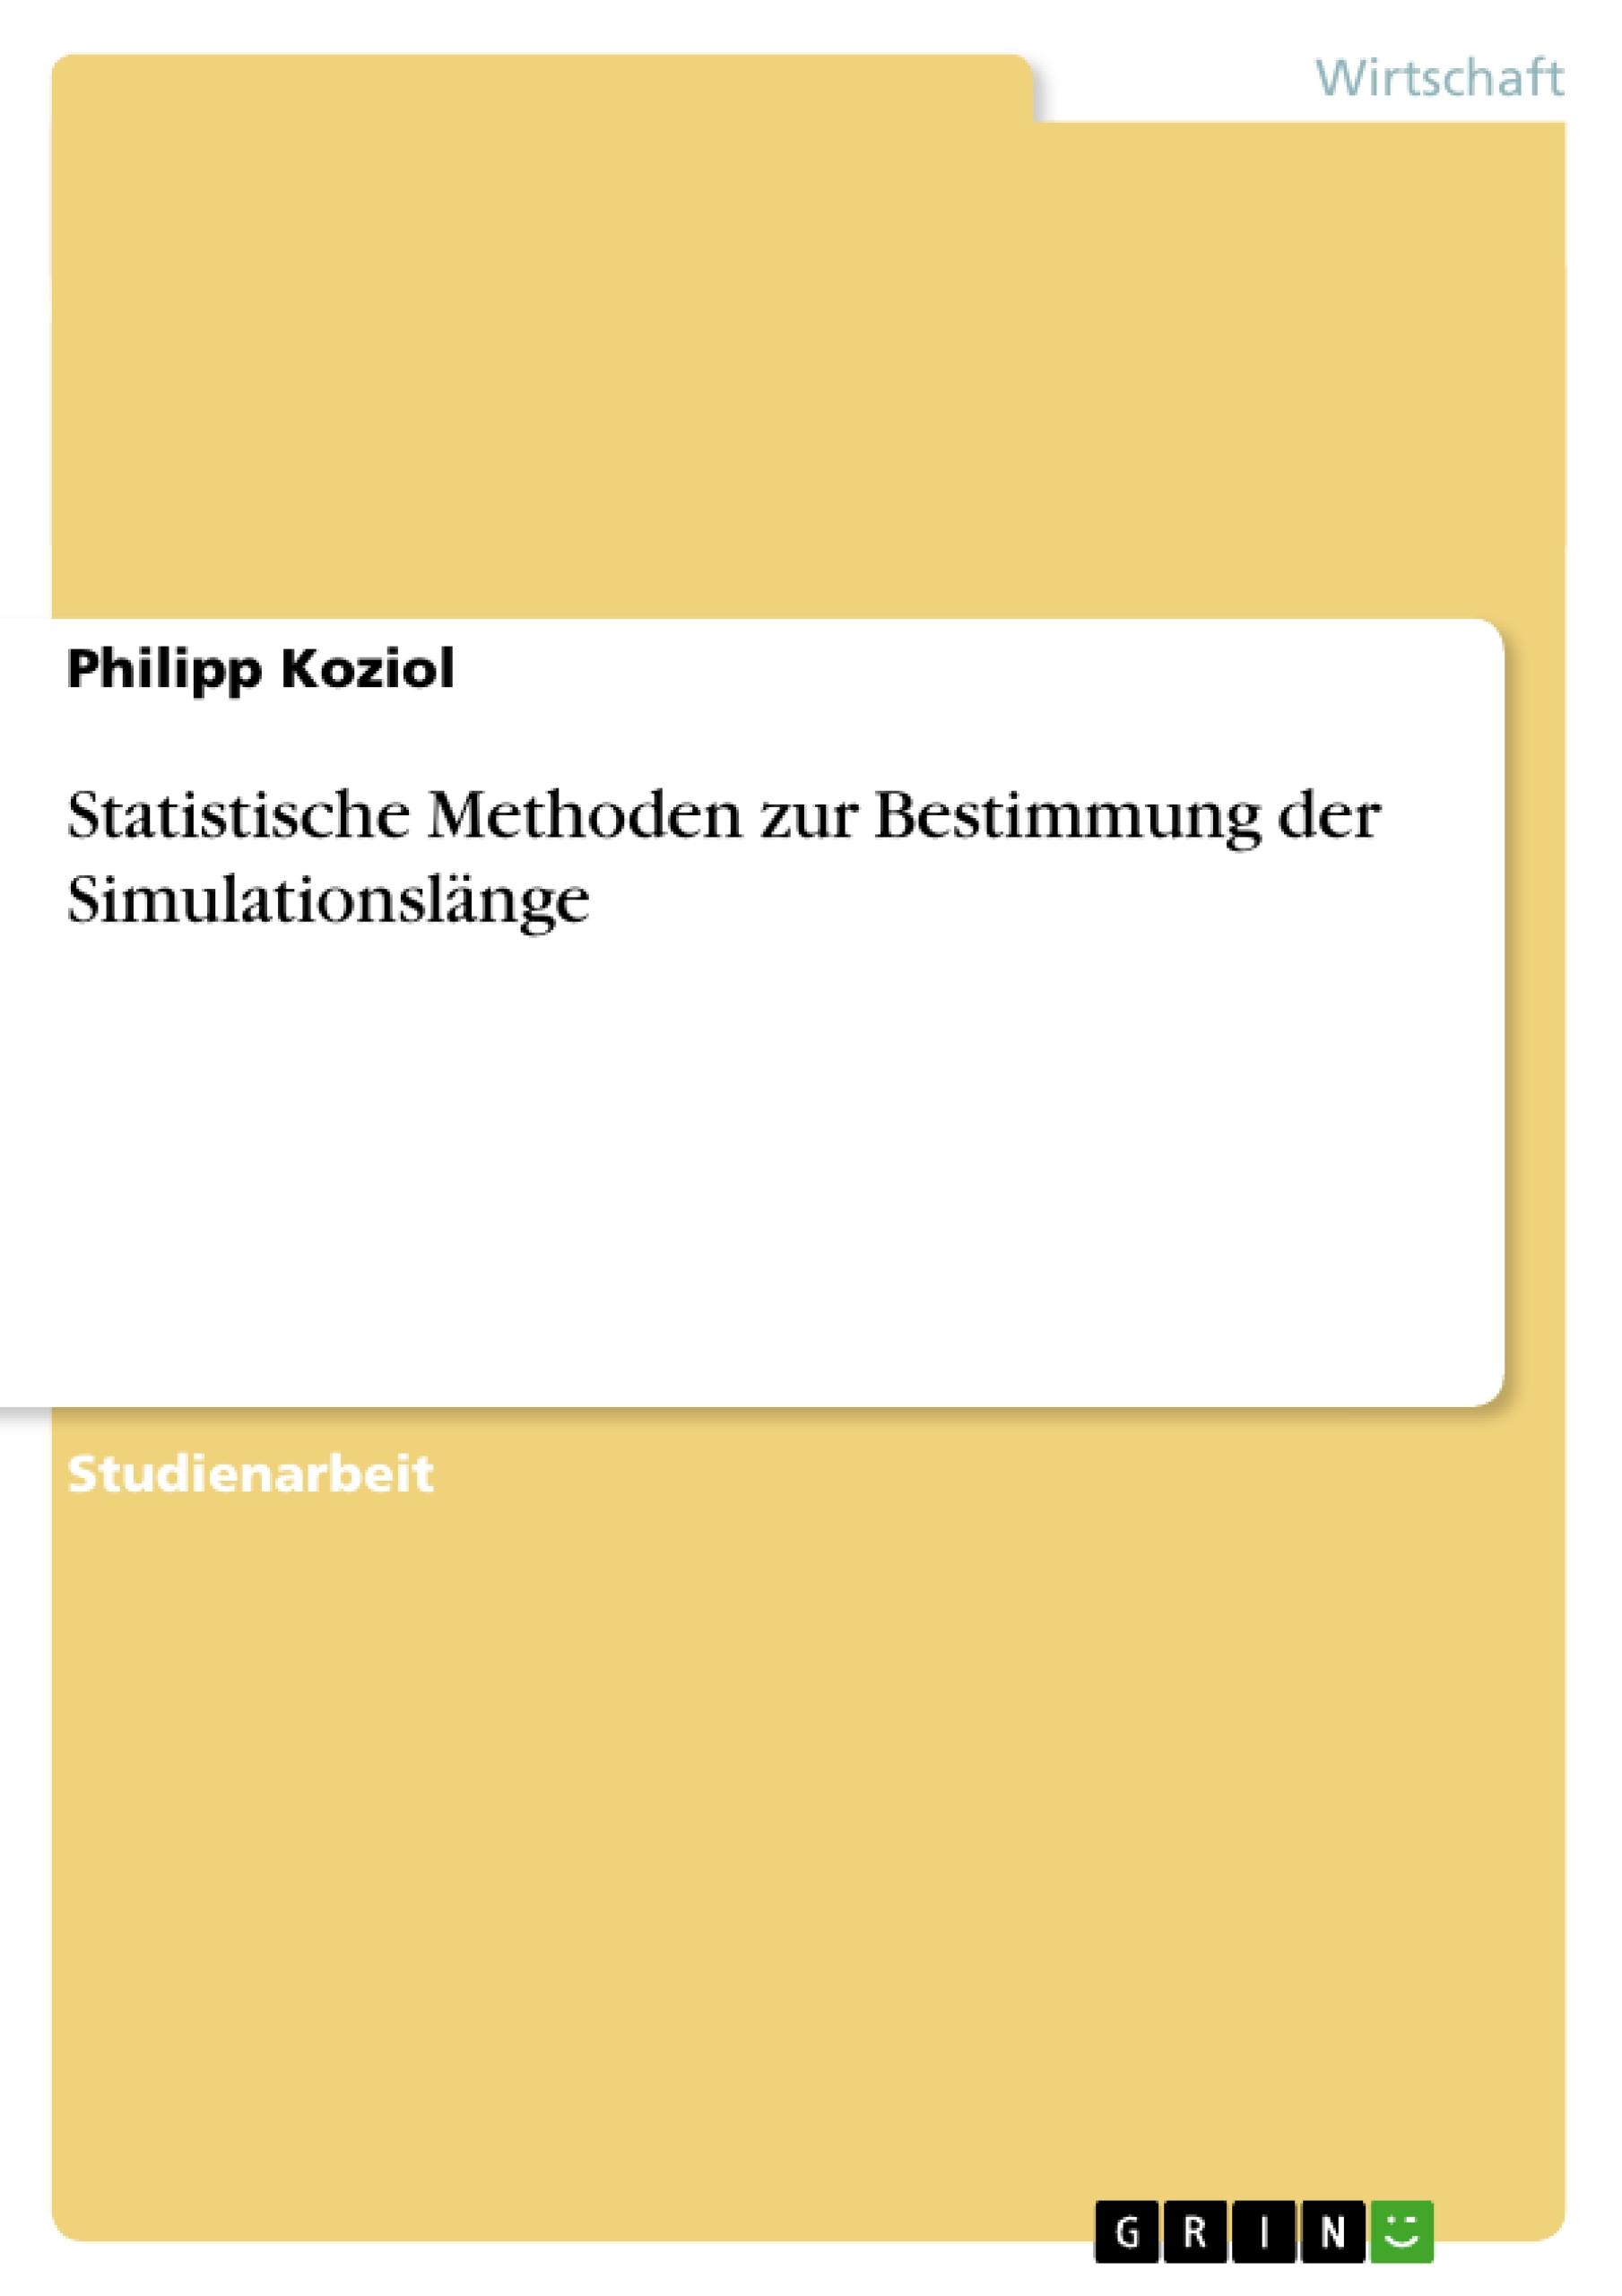 Statistische Methoden zur Bestimmung der Simulationslaenge - Koziol, Philipp